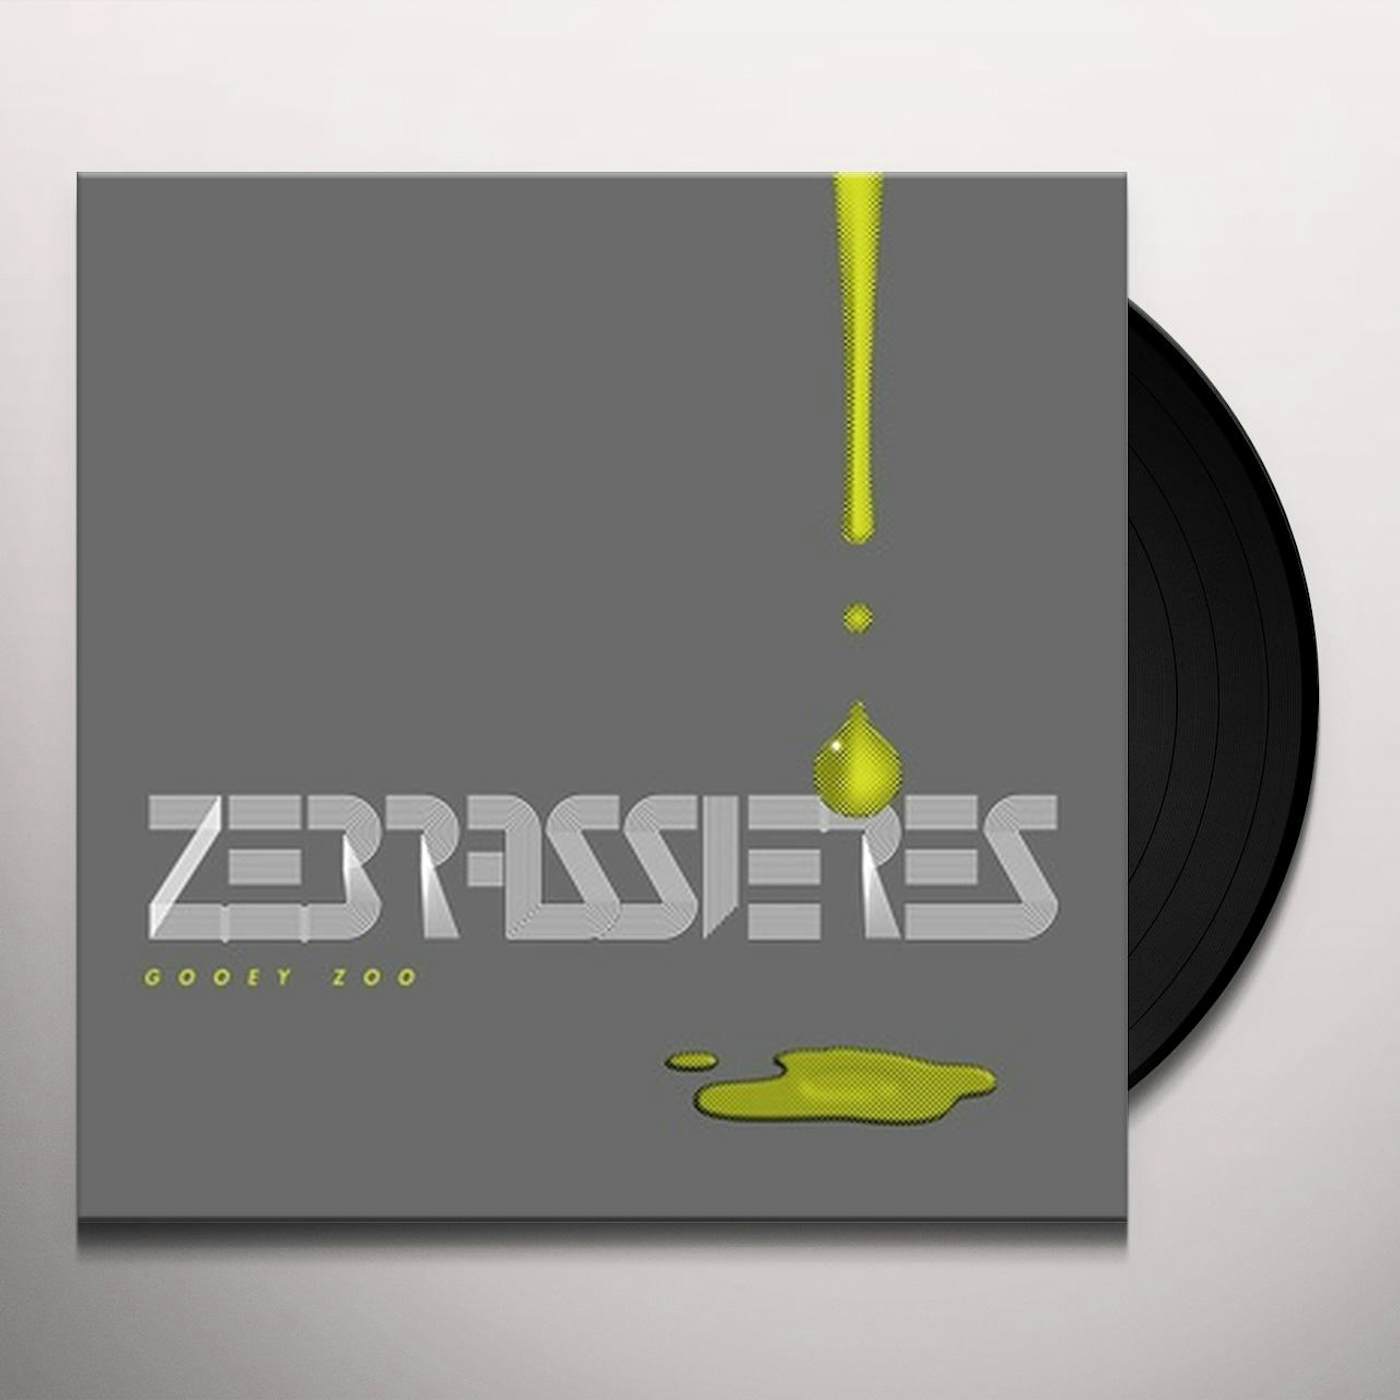 Zebrassieres Gooey Zoo Vinyl Record